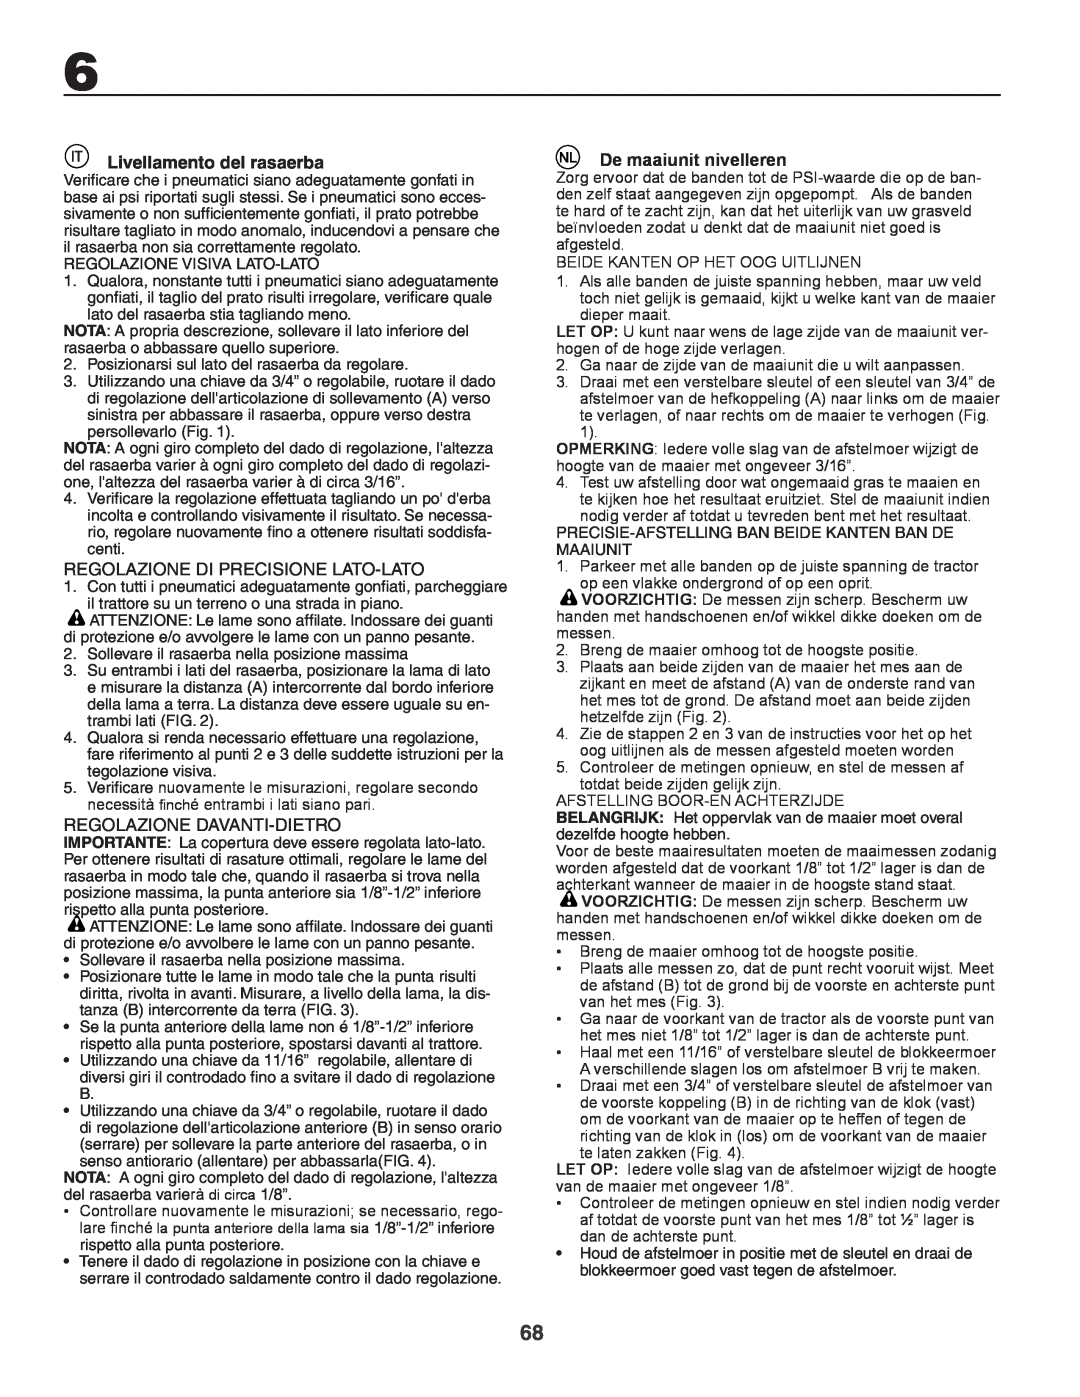 Husqvarna GTH260XP Livellamento del rasaerba, Regolazione Di Precisione Lato-Lato, Regolazione Davanti-Dietro 